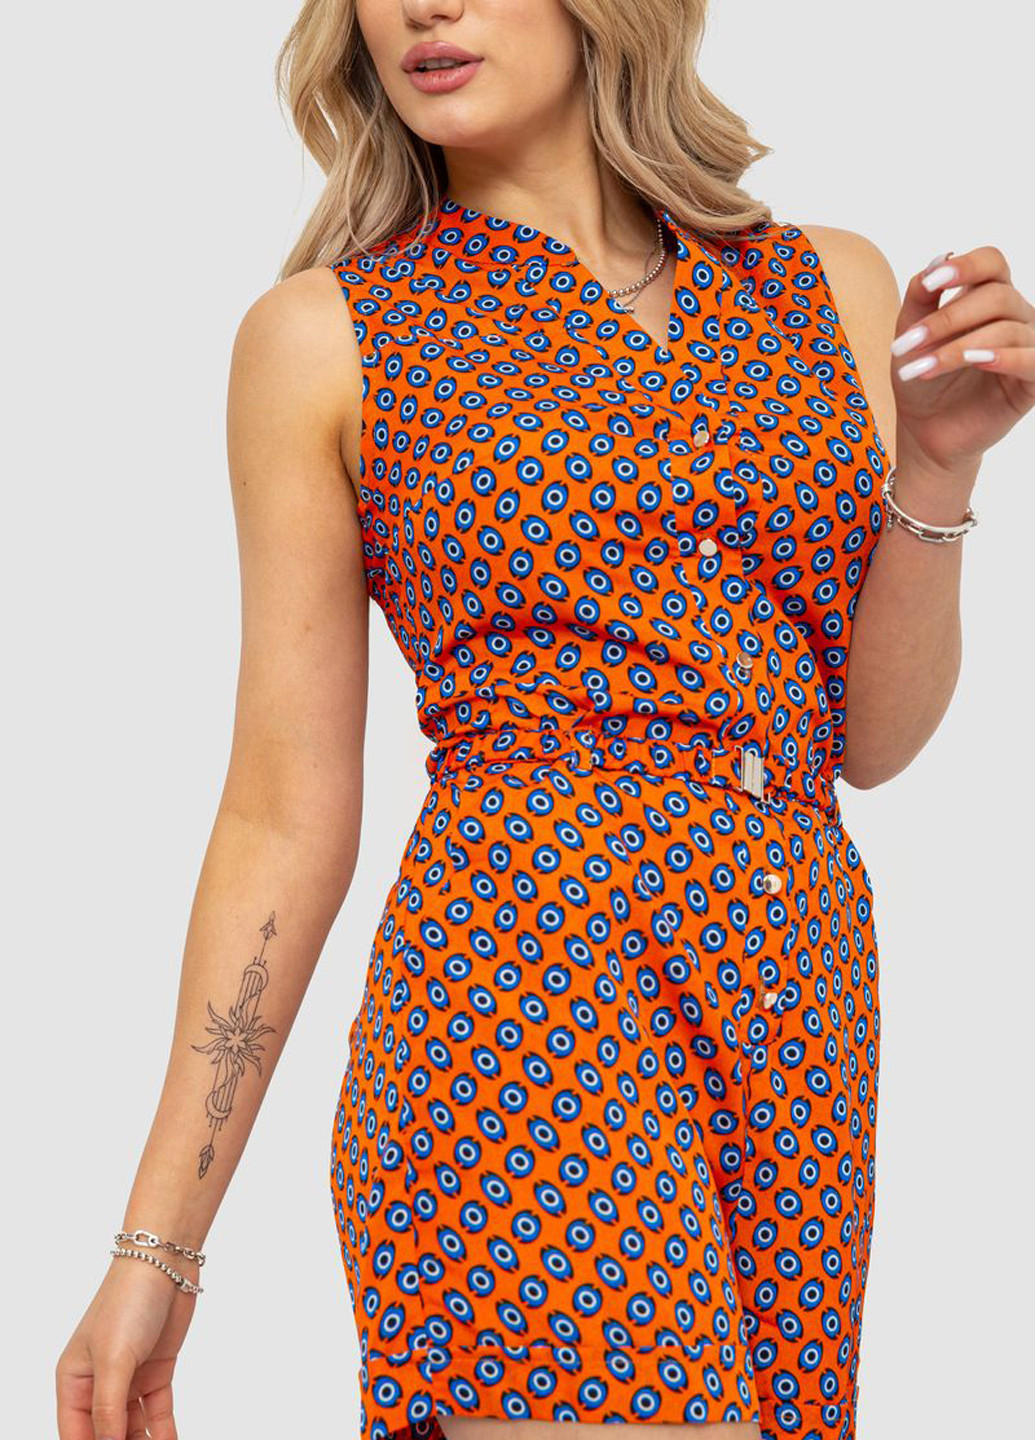 Комбинезон Ager комбинезон-шорты геометрический оранжевый кэжуал хлопок